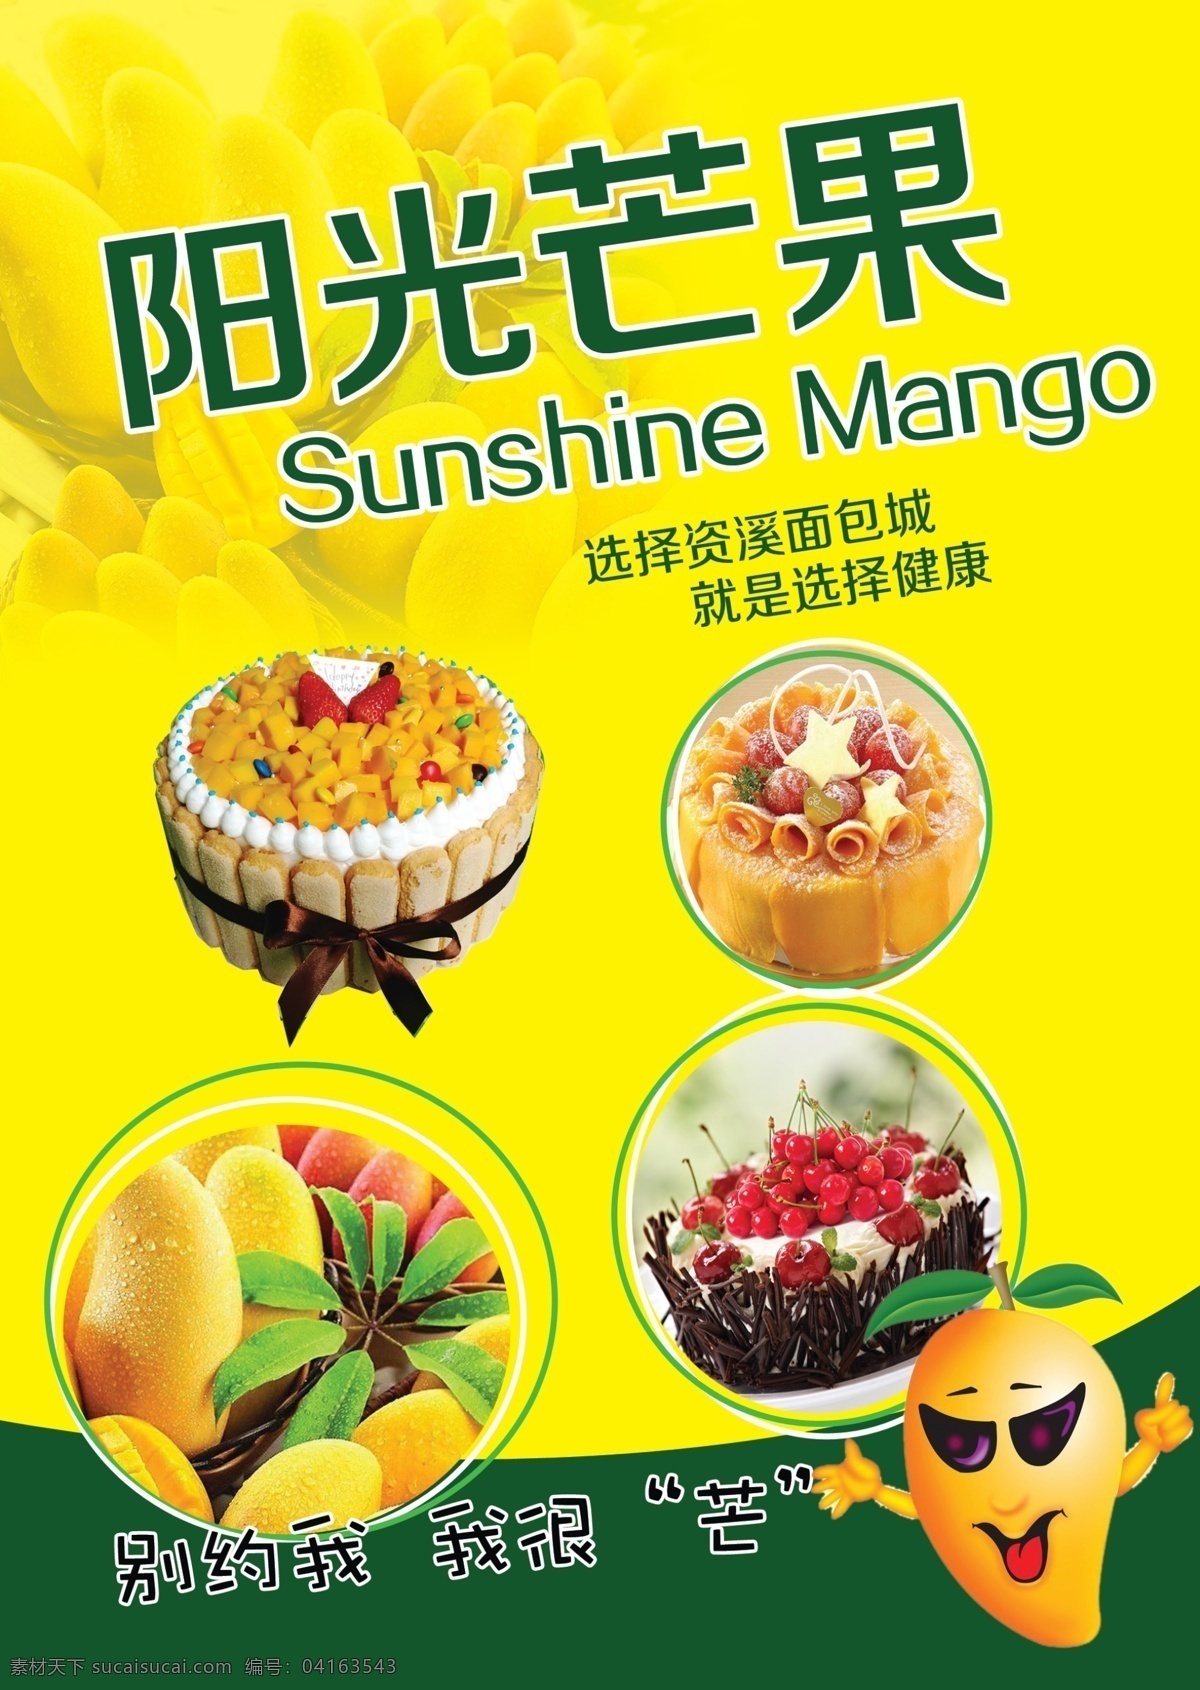 芒果面包海报 芒果 面包 海报 资溪面包 室内写真 面包之乡 活动 阳光 sunshine mango